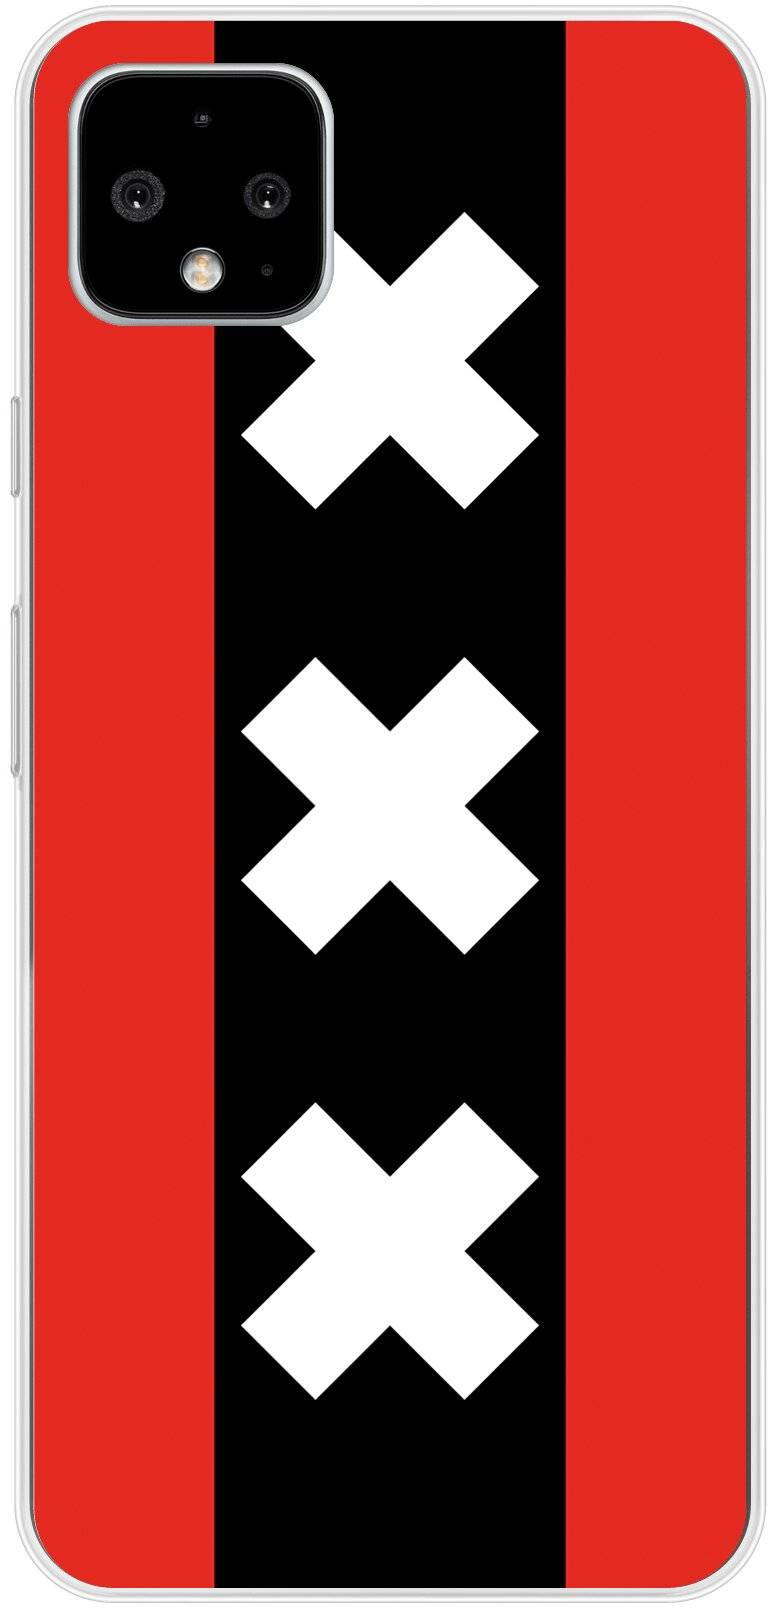 Amsterdamse vlag Pixel 4 XL